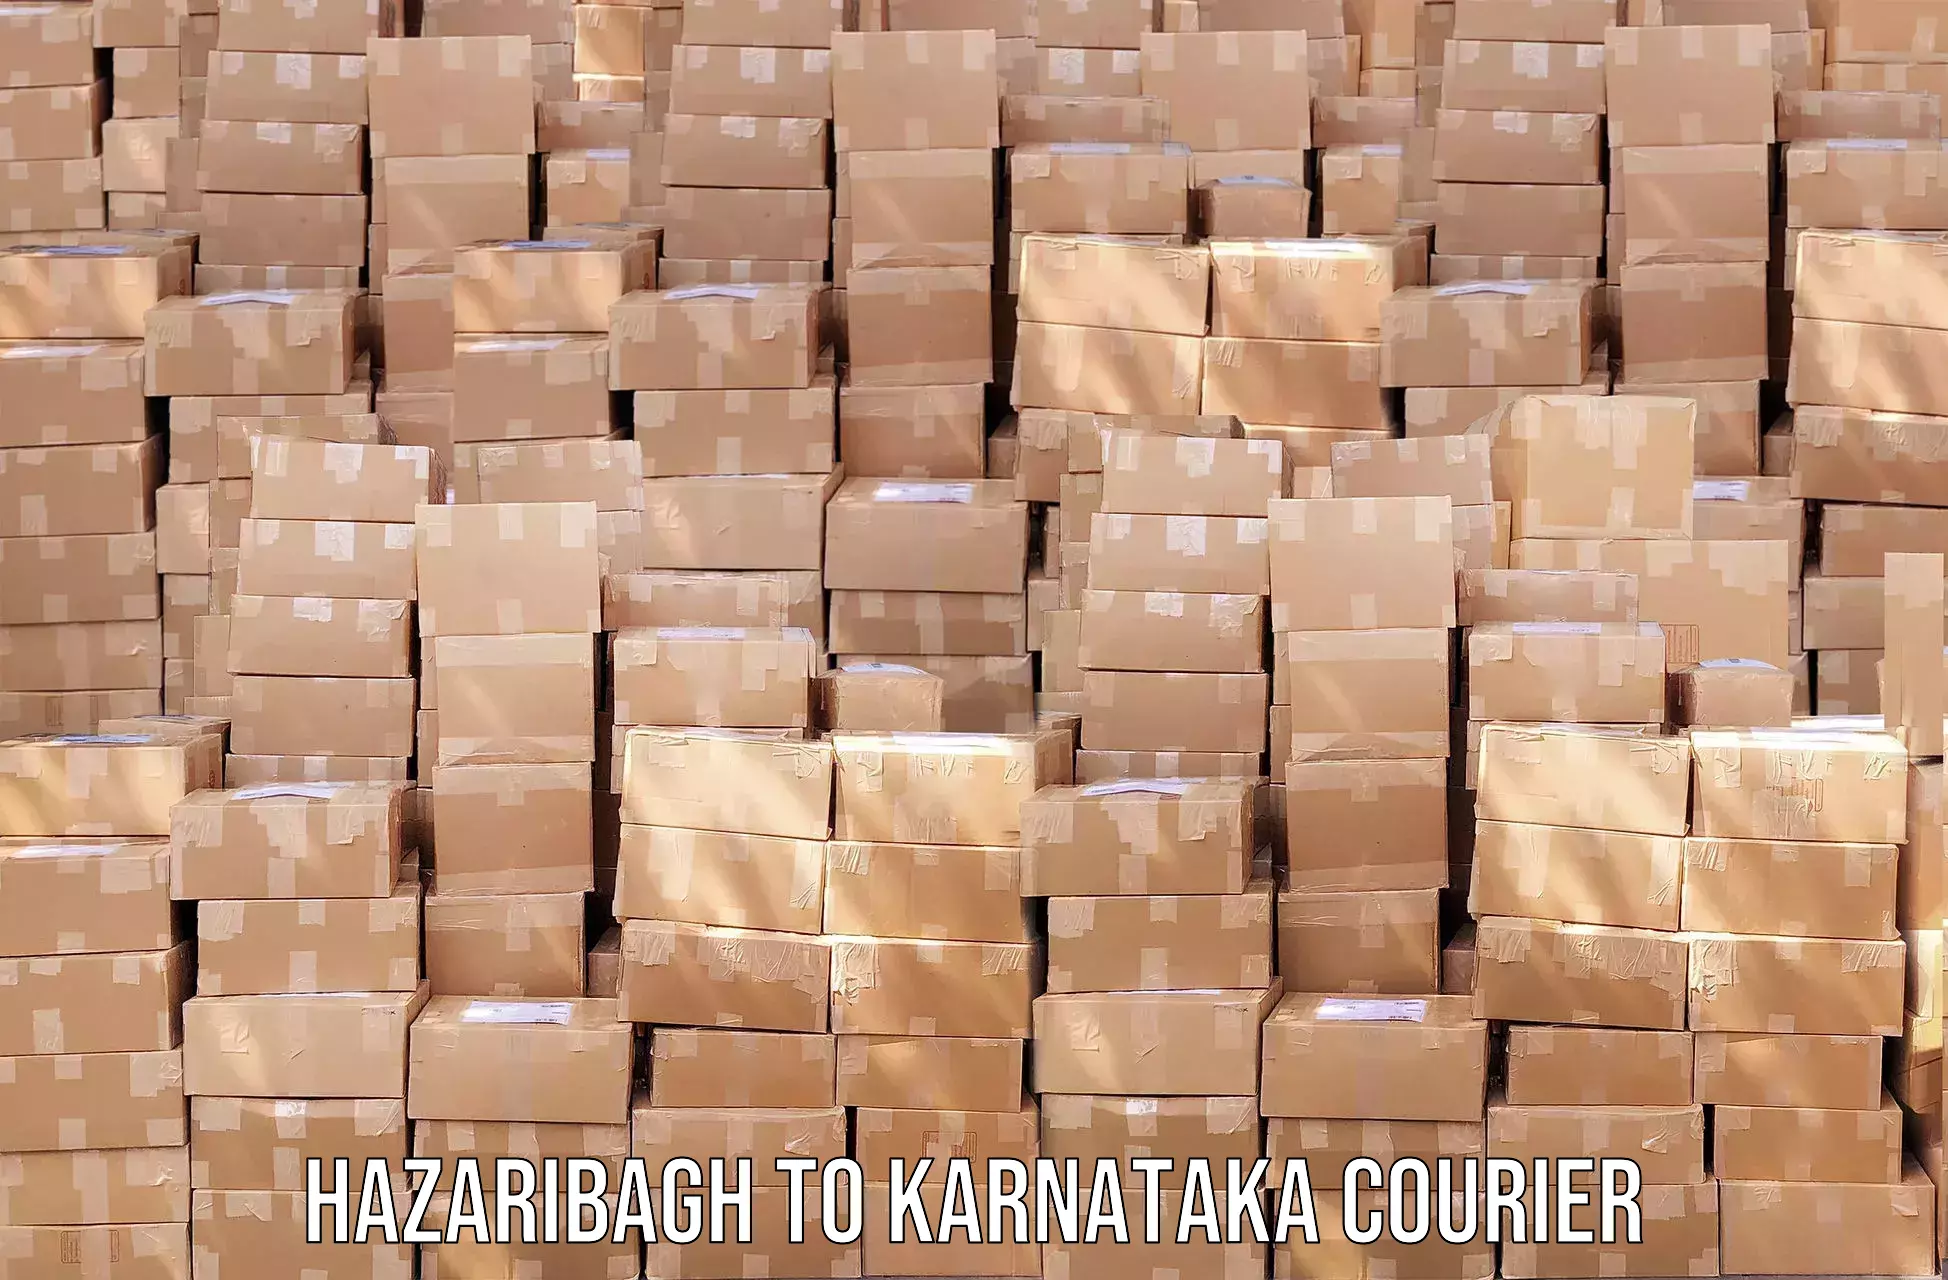 Discounted shipping Hazaribagh to Kanakapura